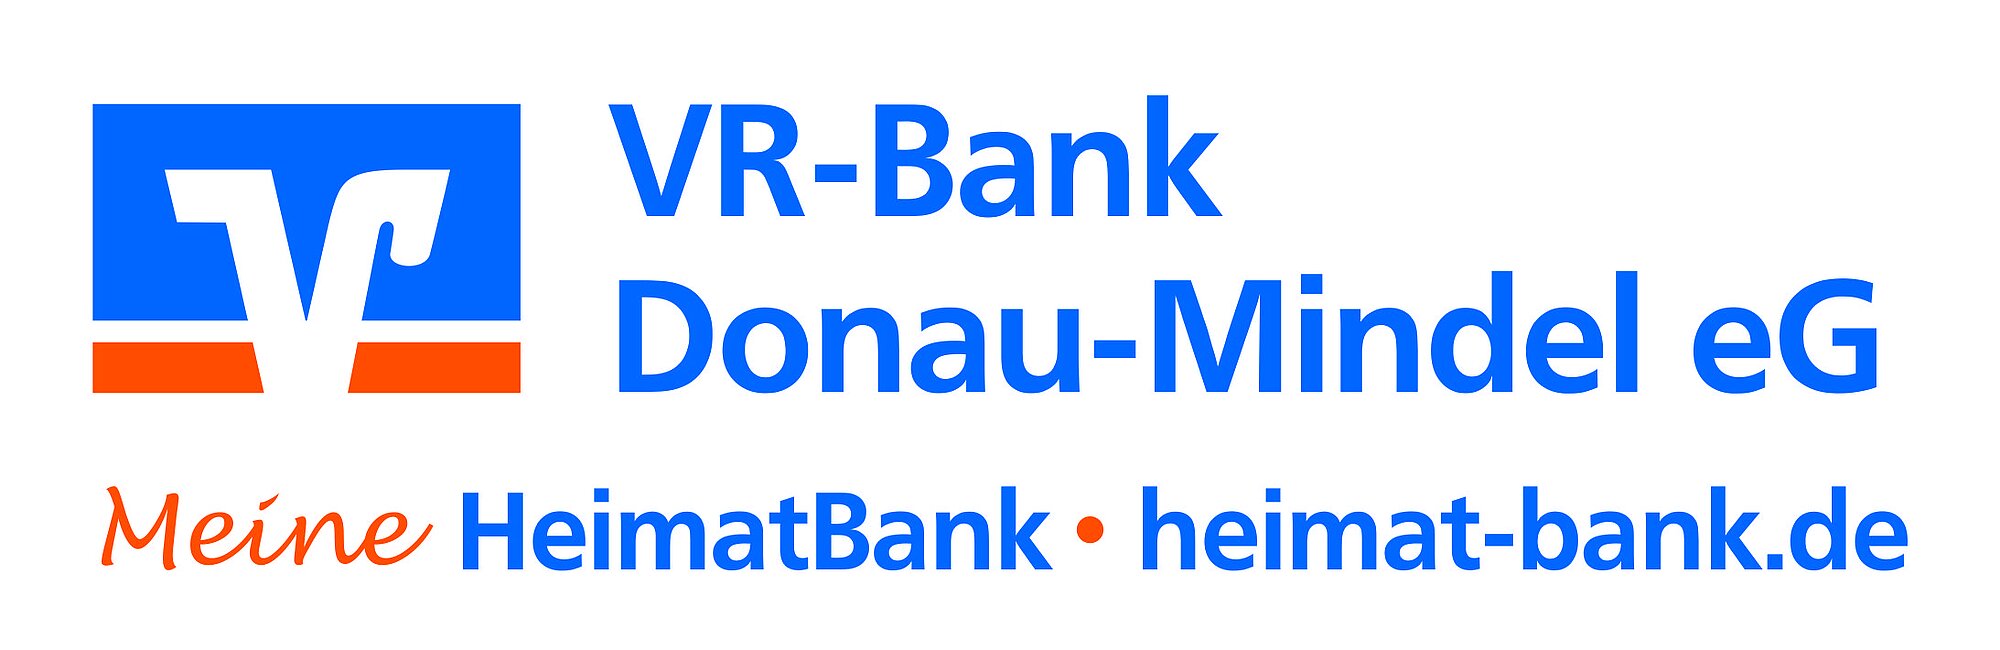 Die VR-Bank unterstützte das Projekt "Bürger forschen". Grafik: VR-Bank